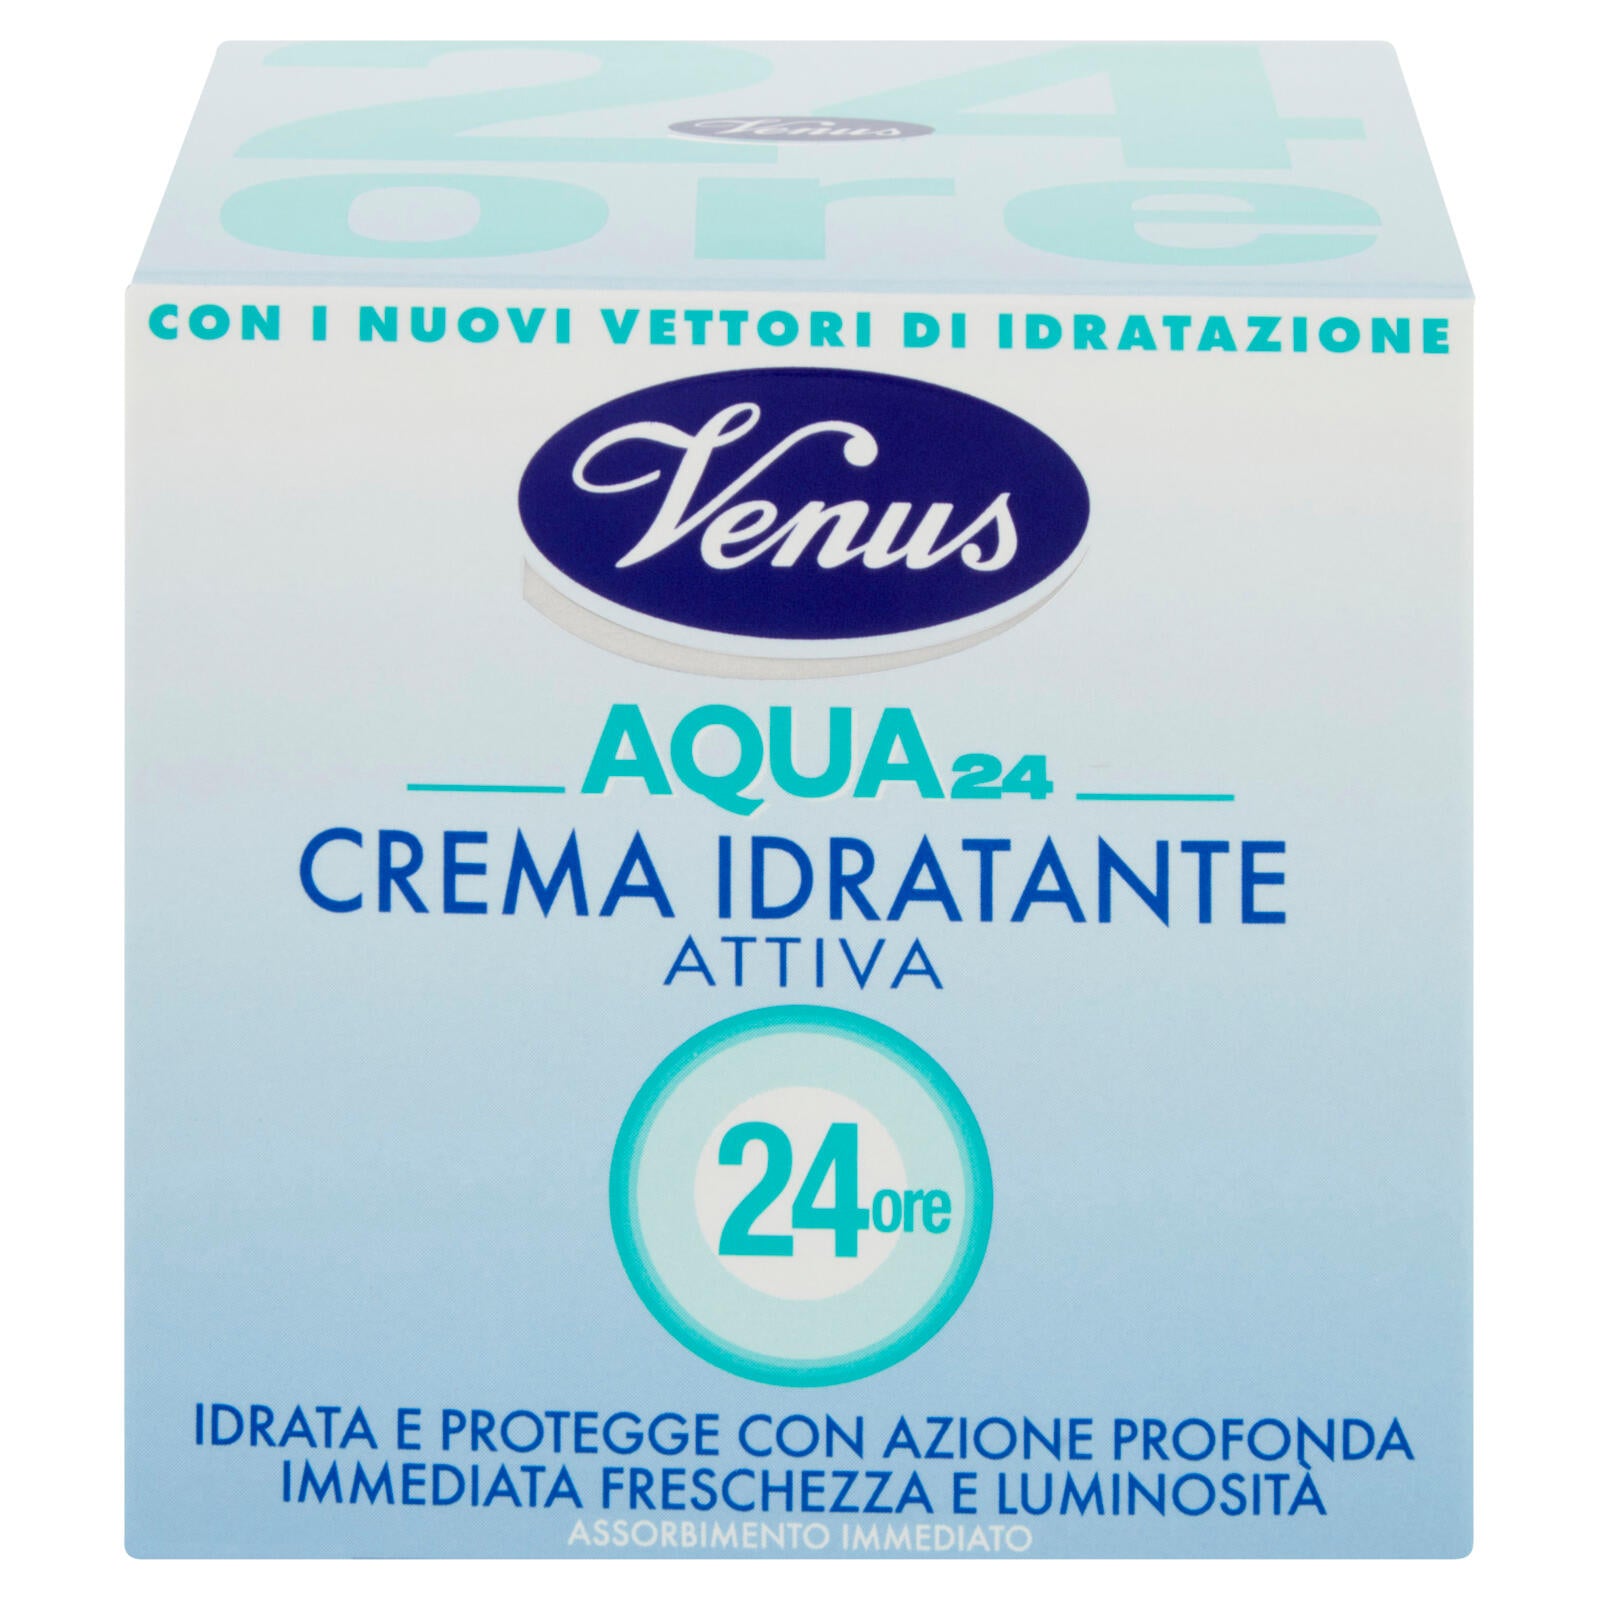 Venus Aqua 24 Crema Idratante Attiva 50 mL